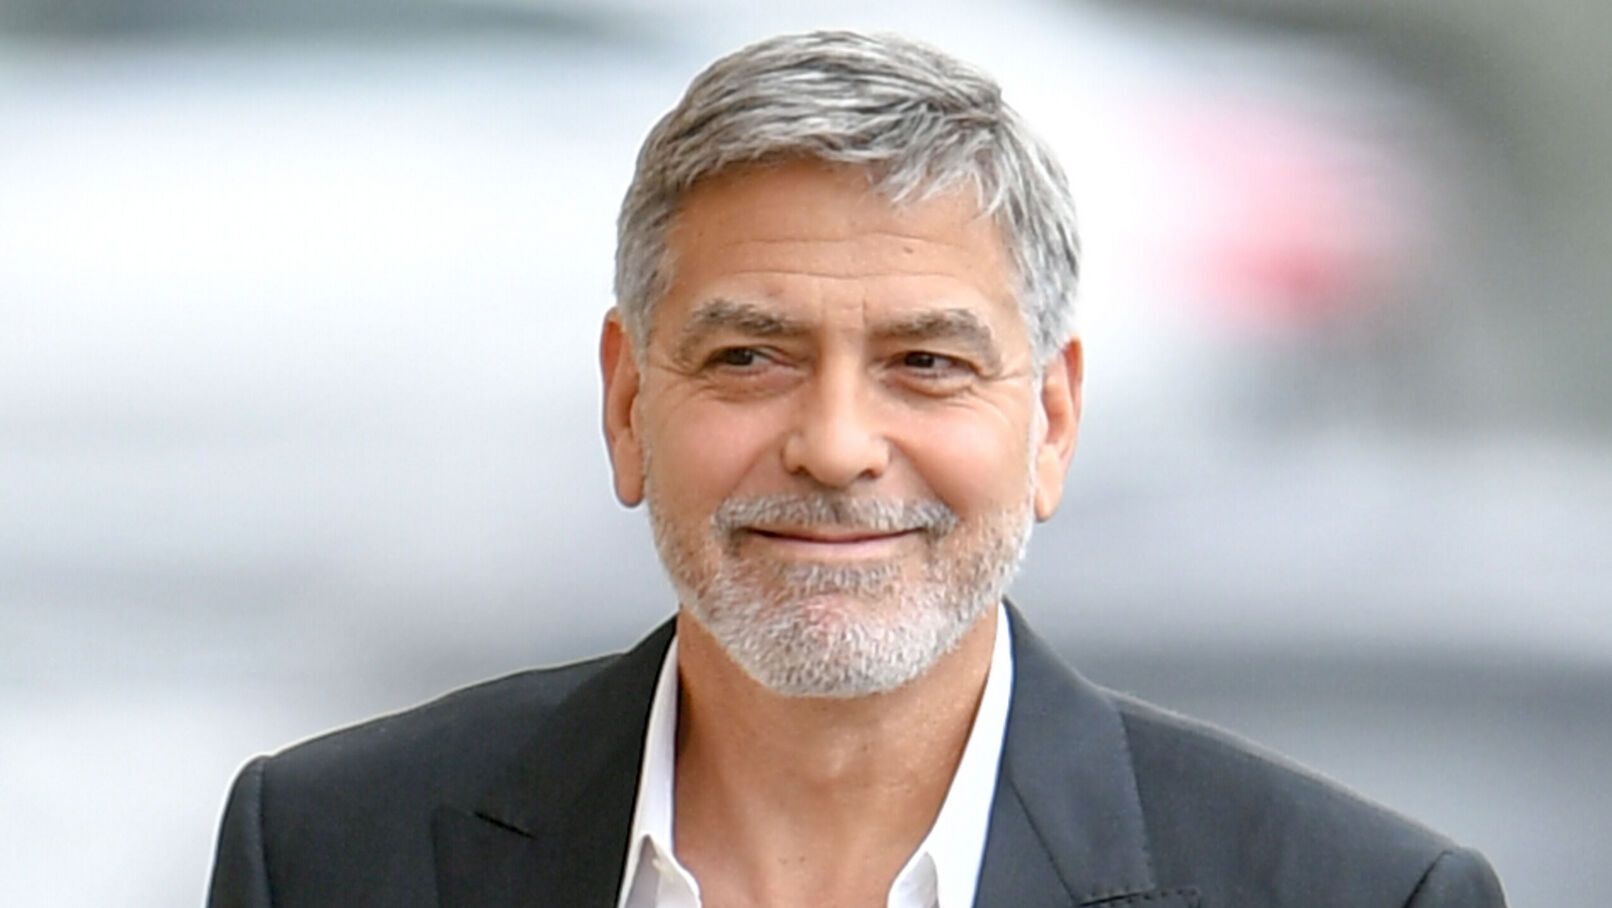 George Clooney : La trop grande perte de poids qui l’a conduit aux urgences